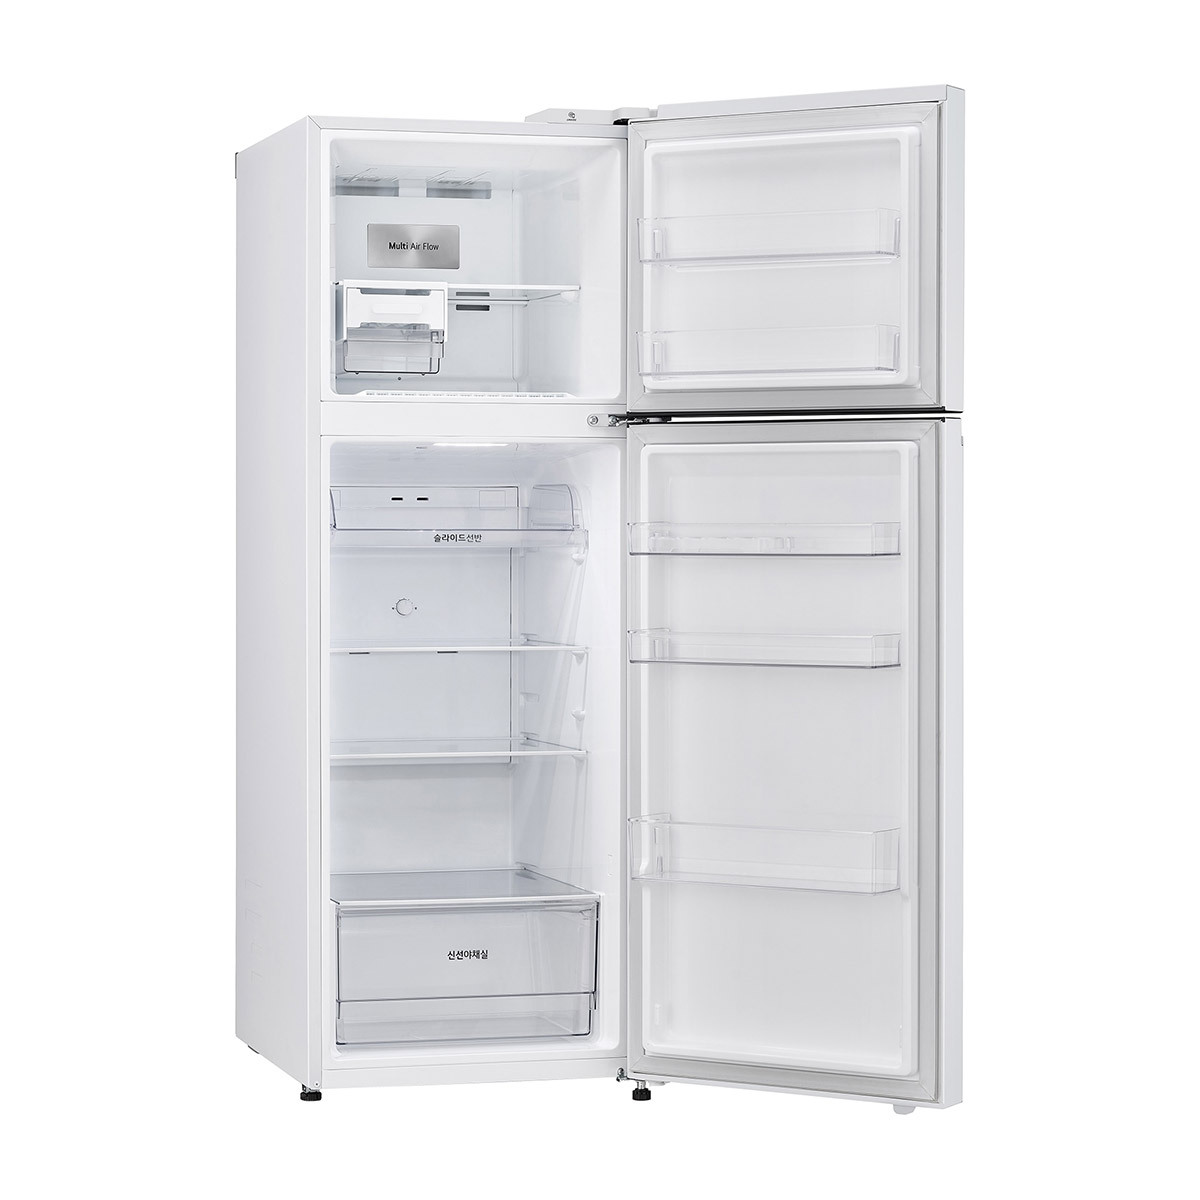 엘지 일반 냉장고 335L - 화이트